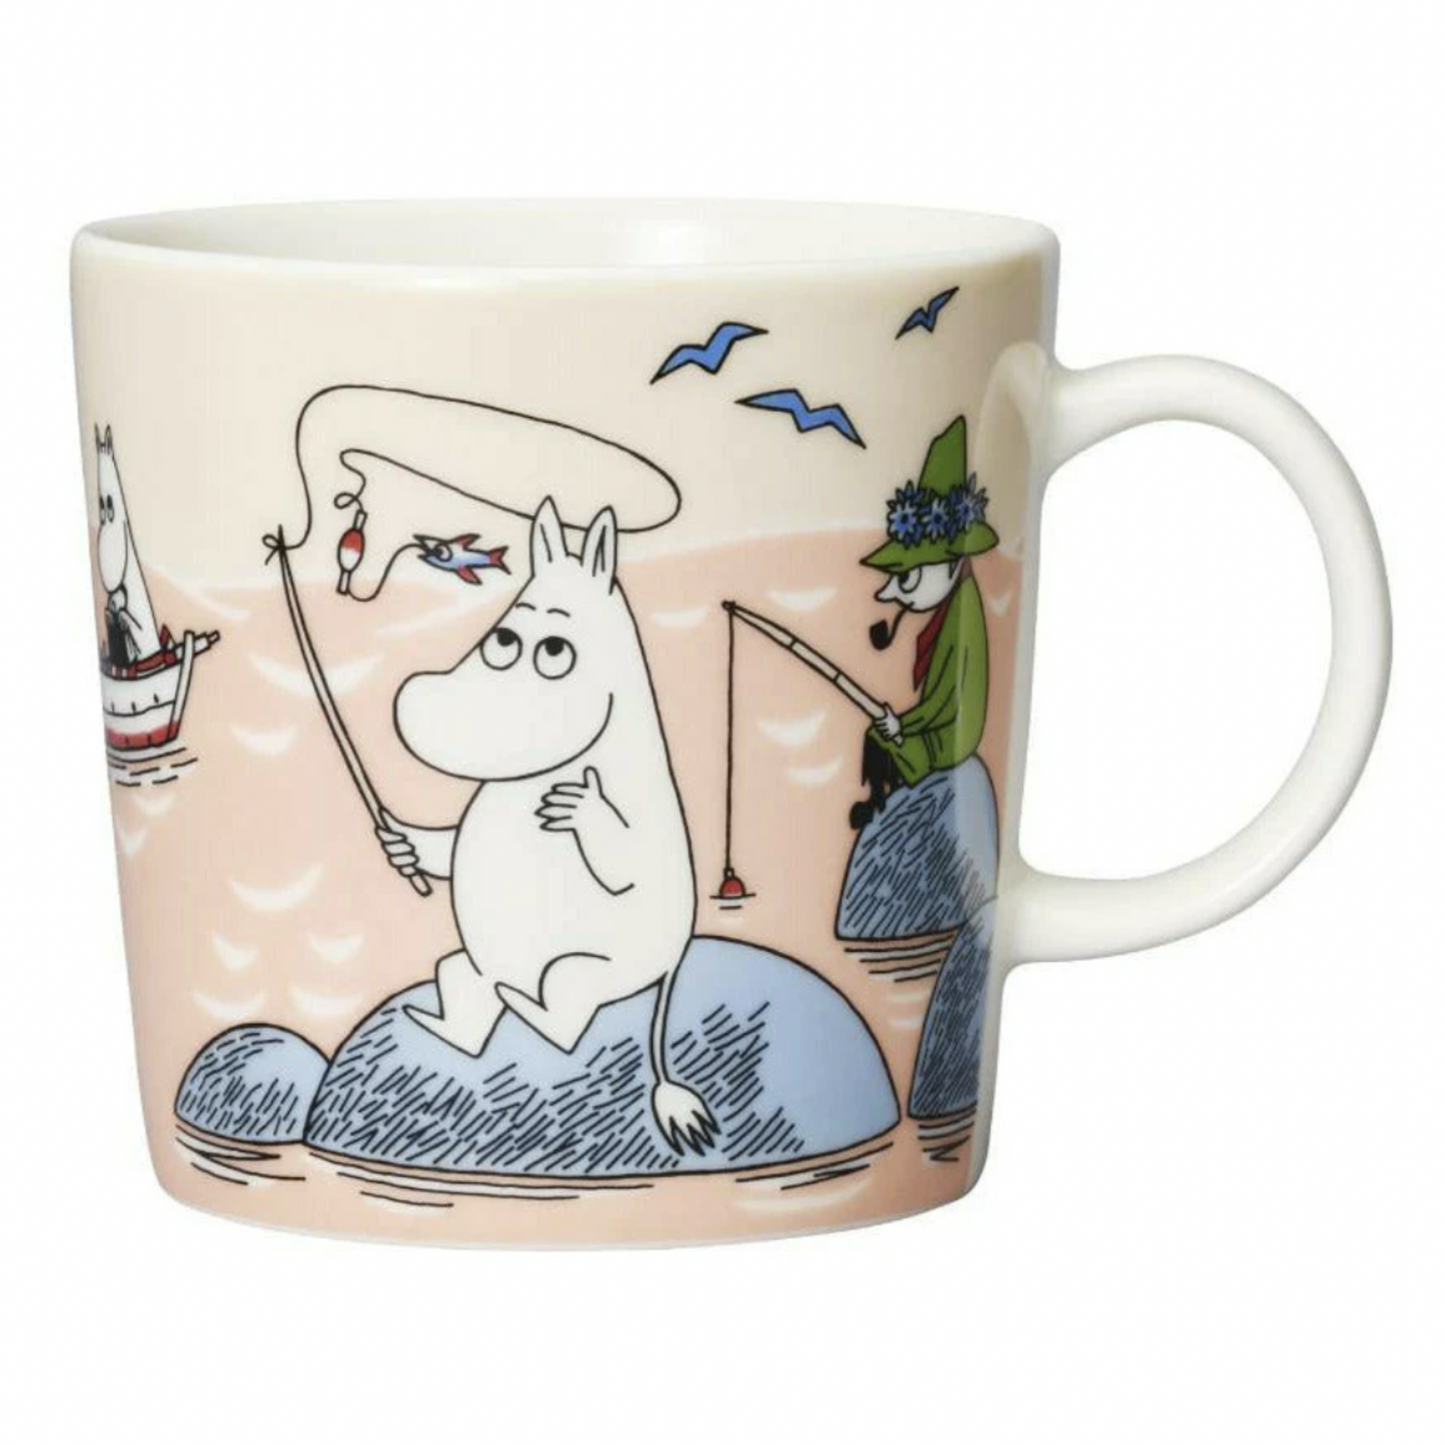 Moomin Mug by Arabia, Fishing Summer 2022 (8075863392543)